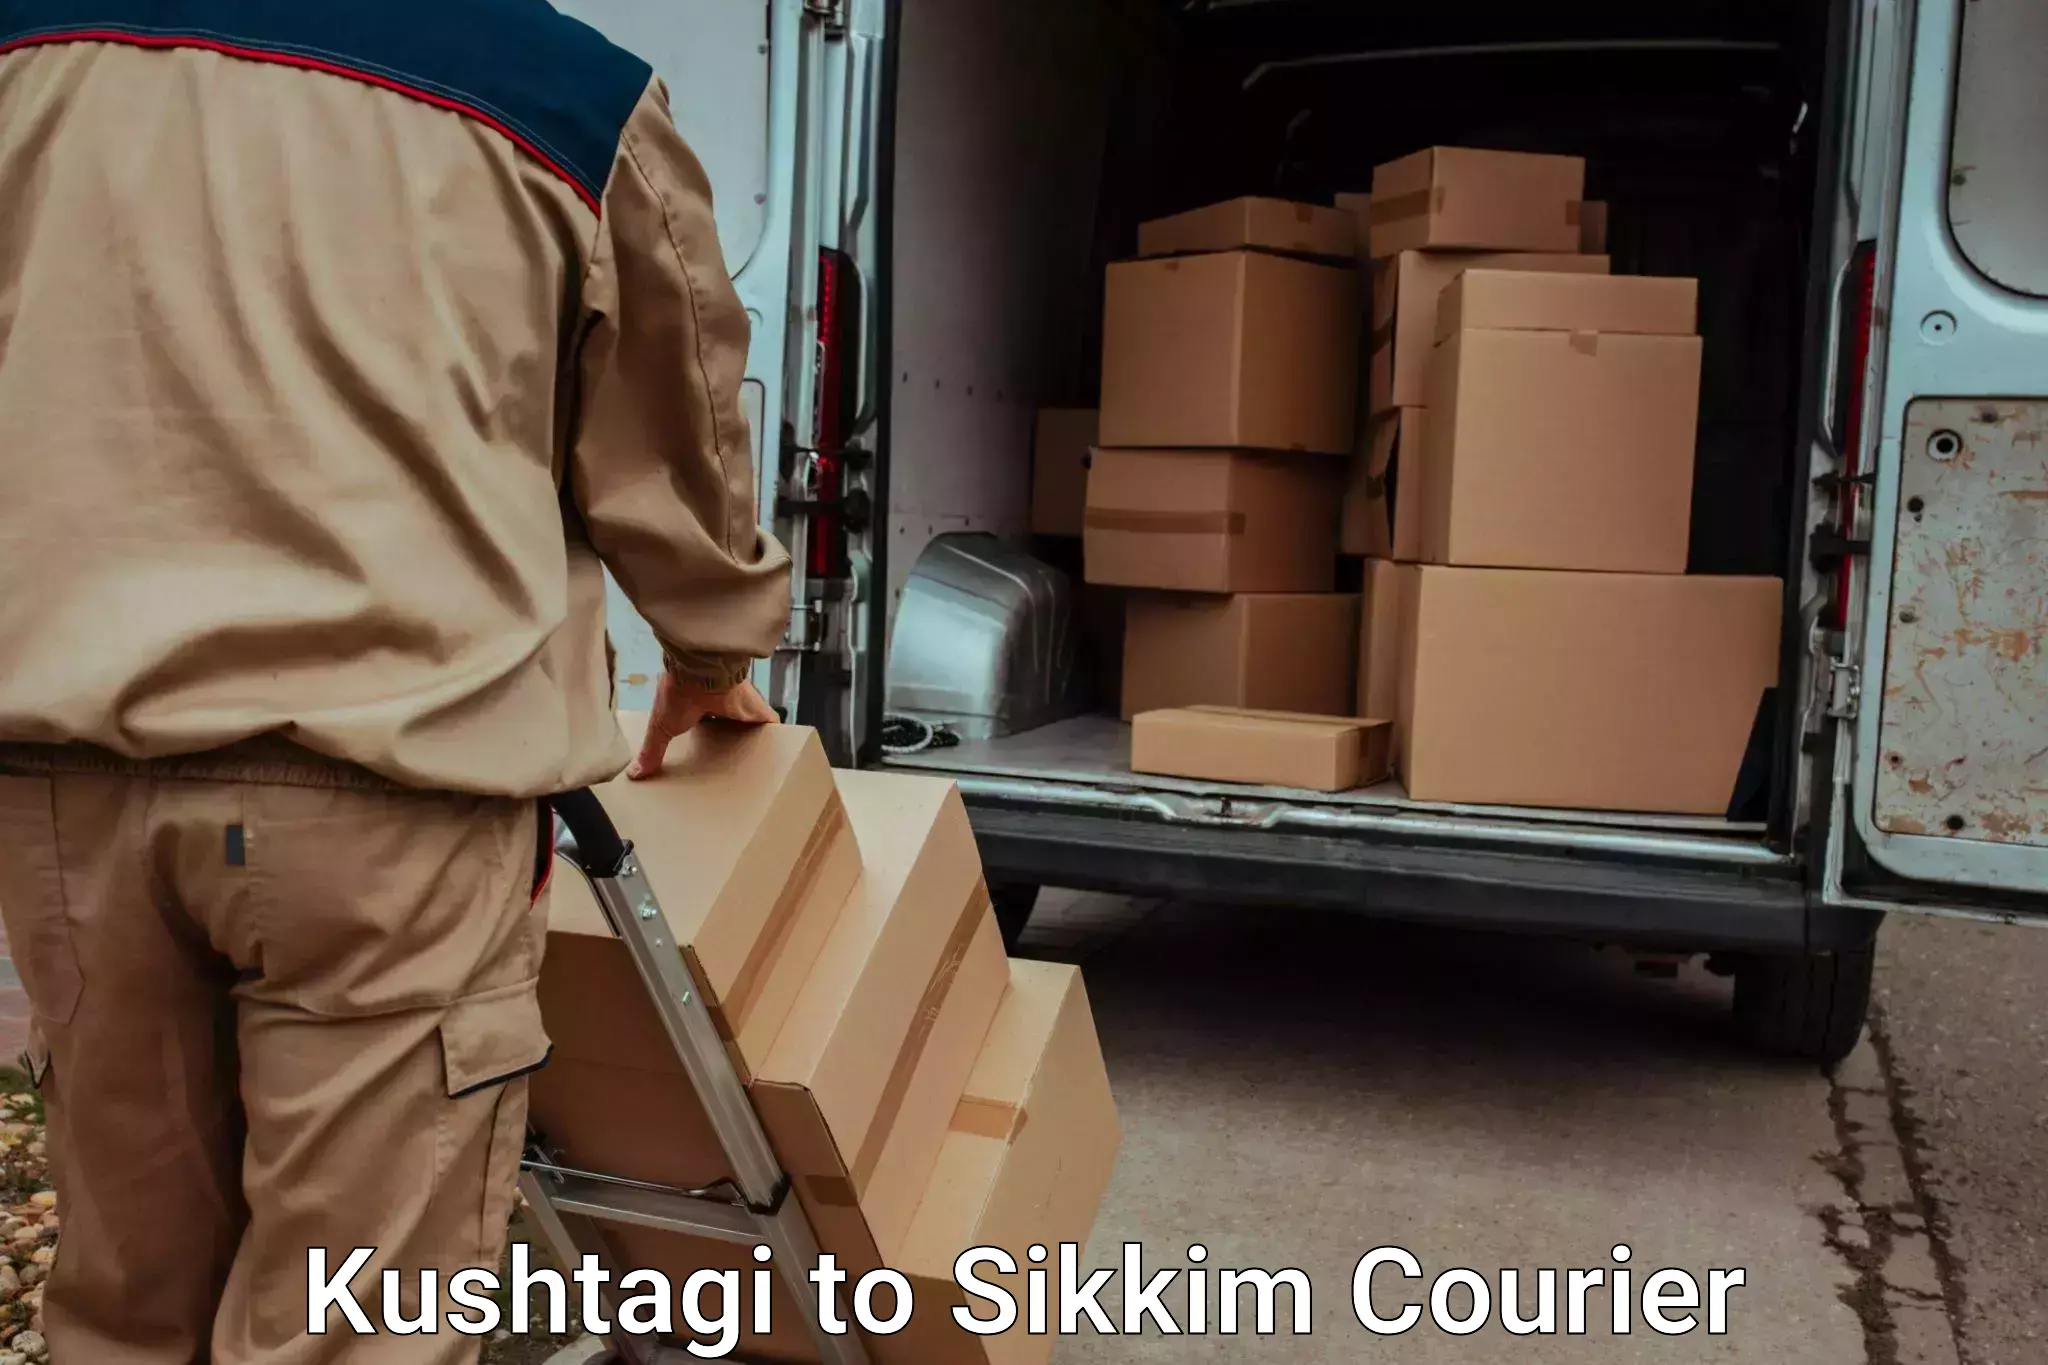 Automated luggage transport Kushtagi to Pelling